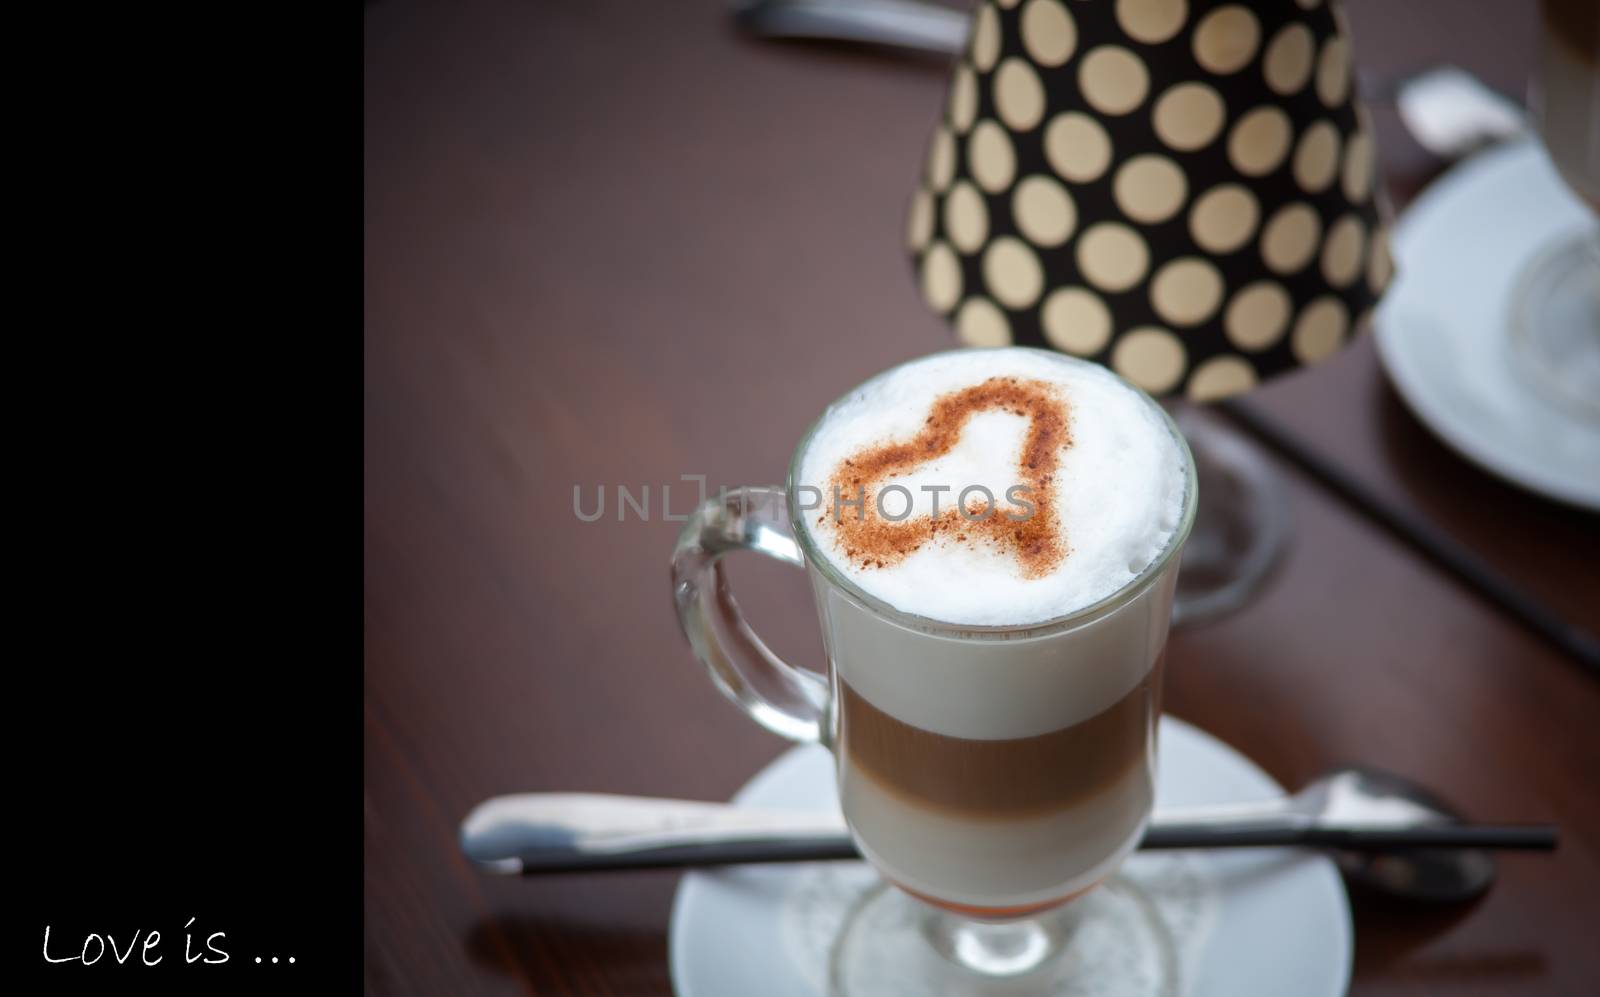 Latte Coffee art on the wooden desk by sfinks